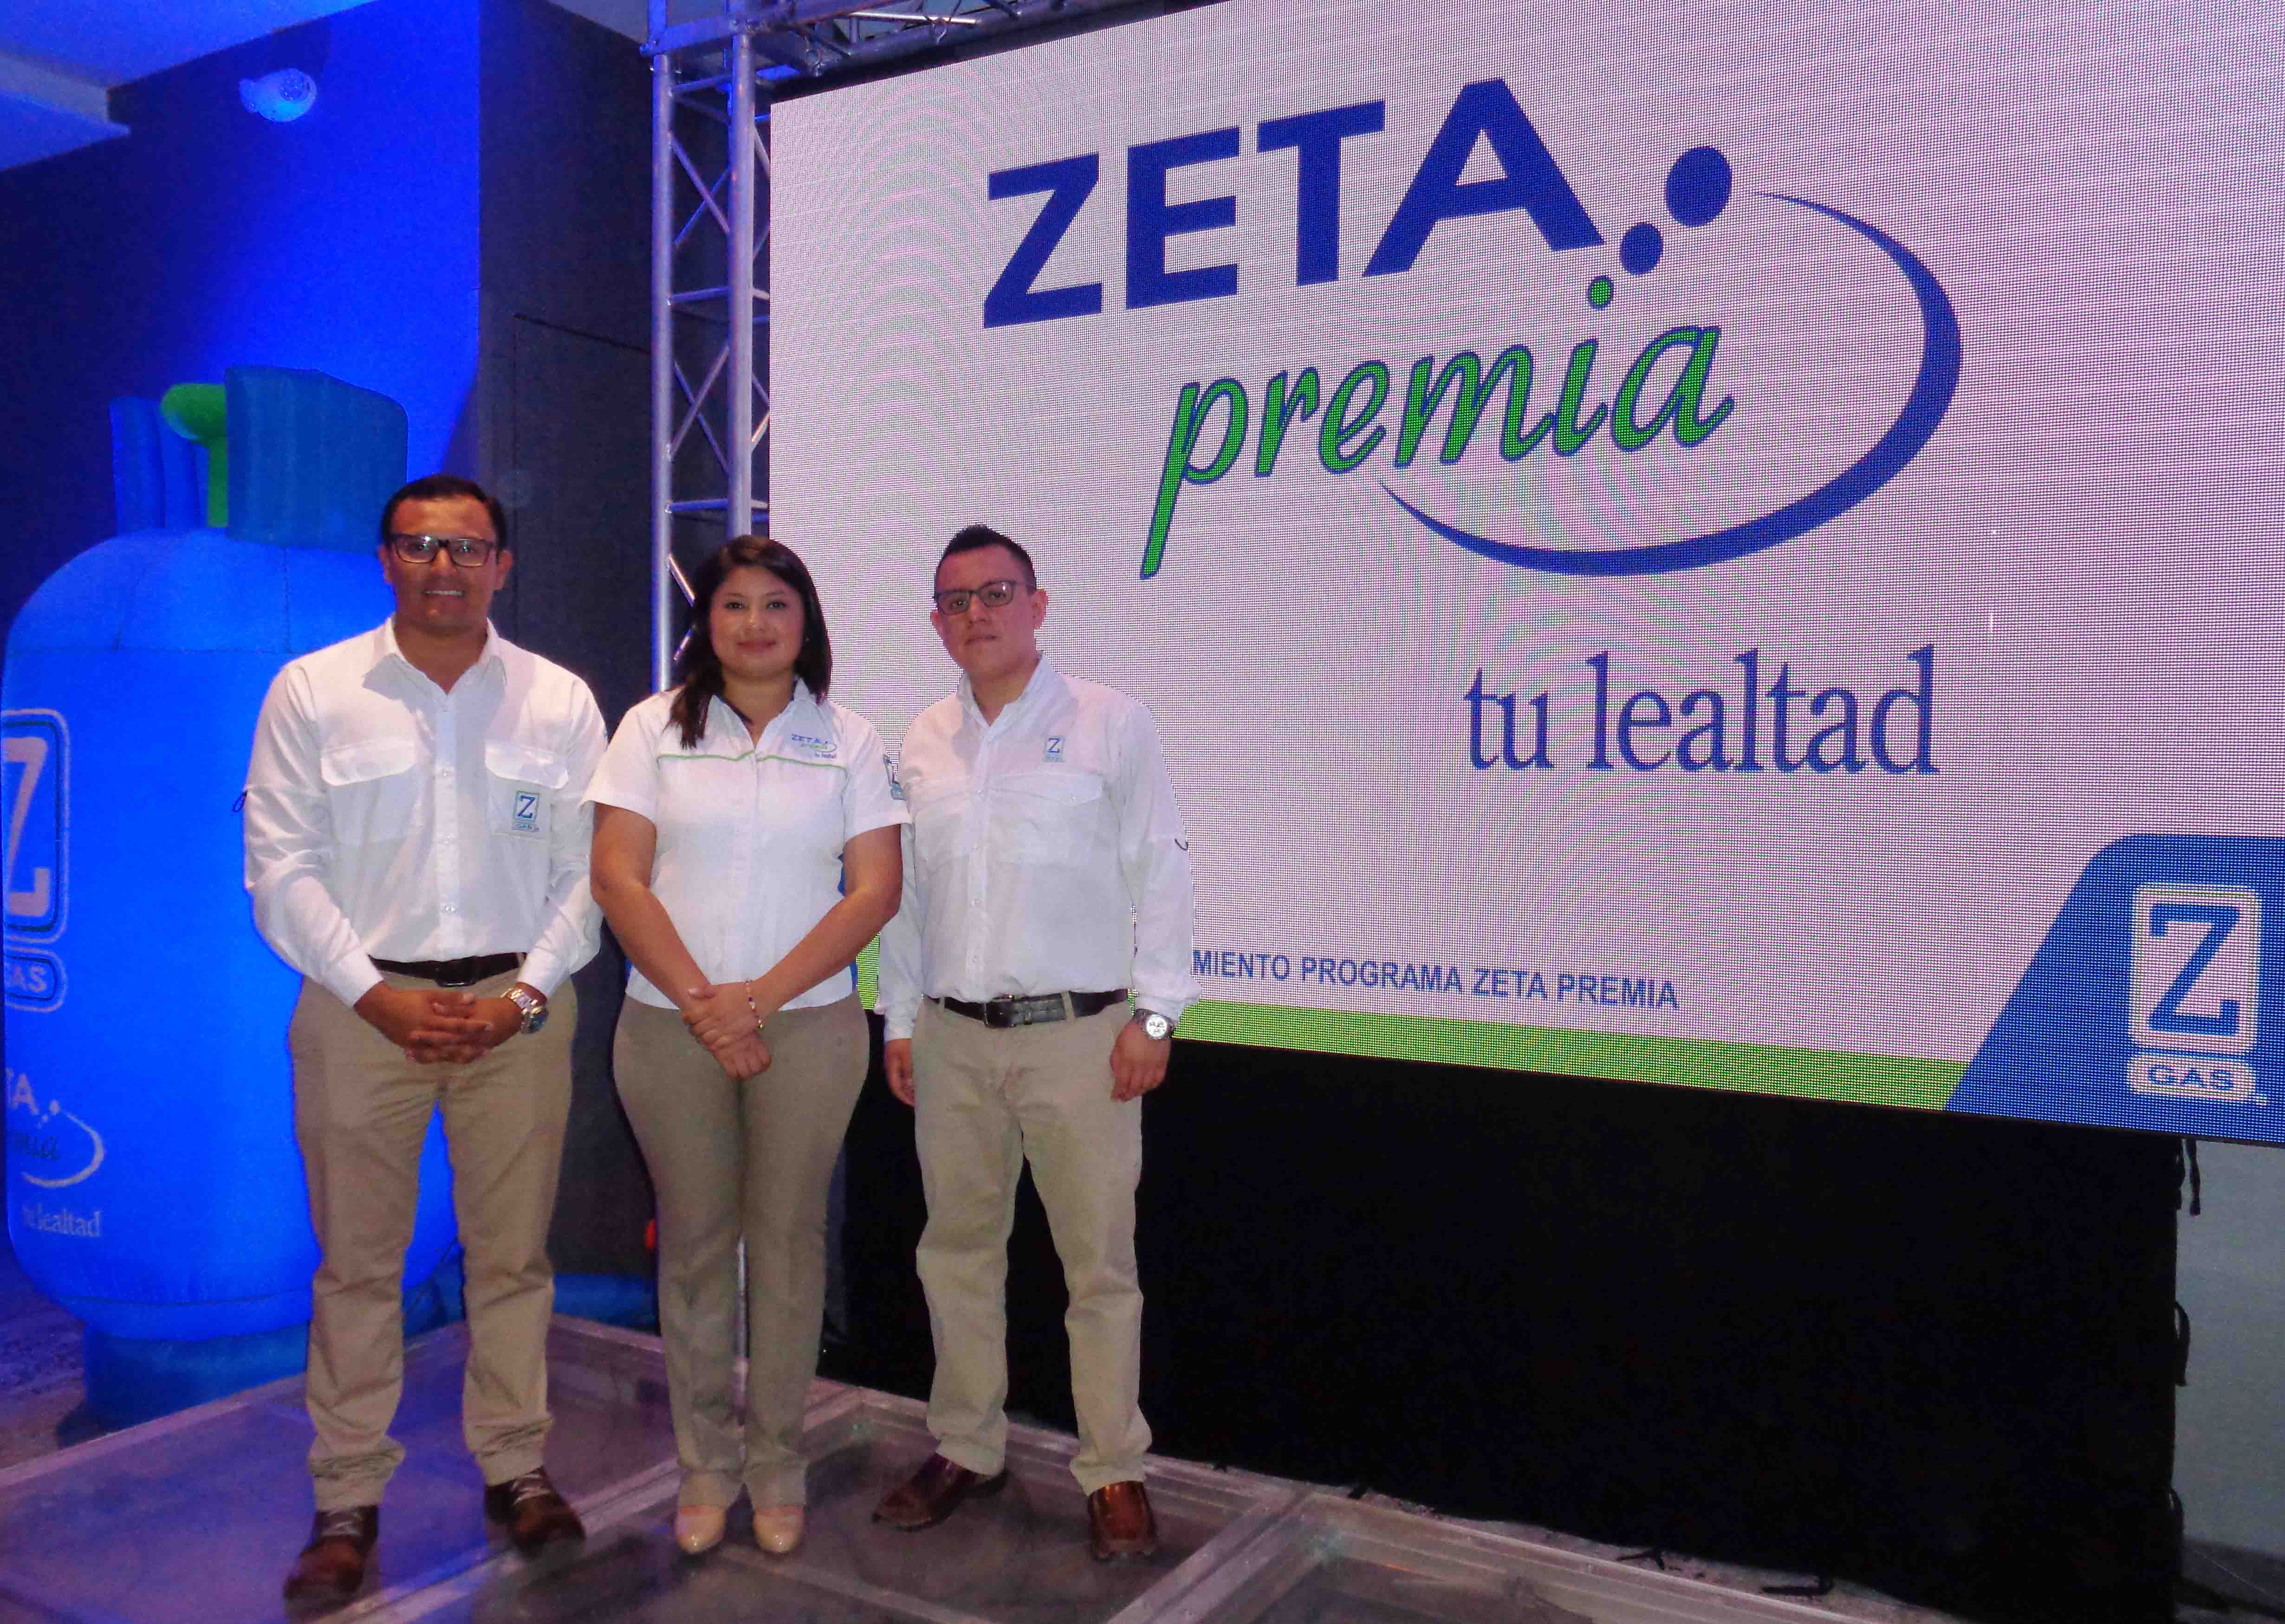 Zeta Gas Premia la lealtad de sus clientes